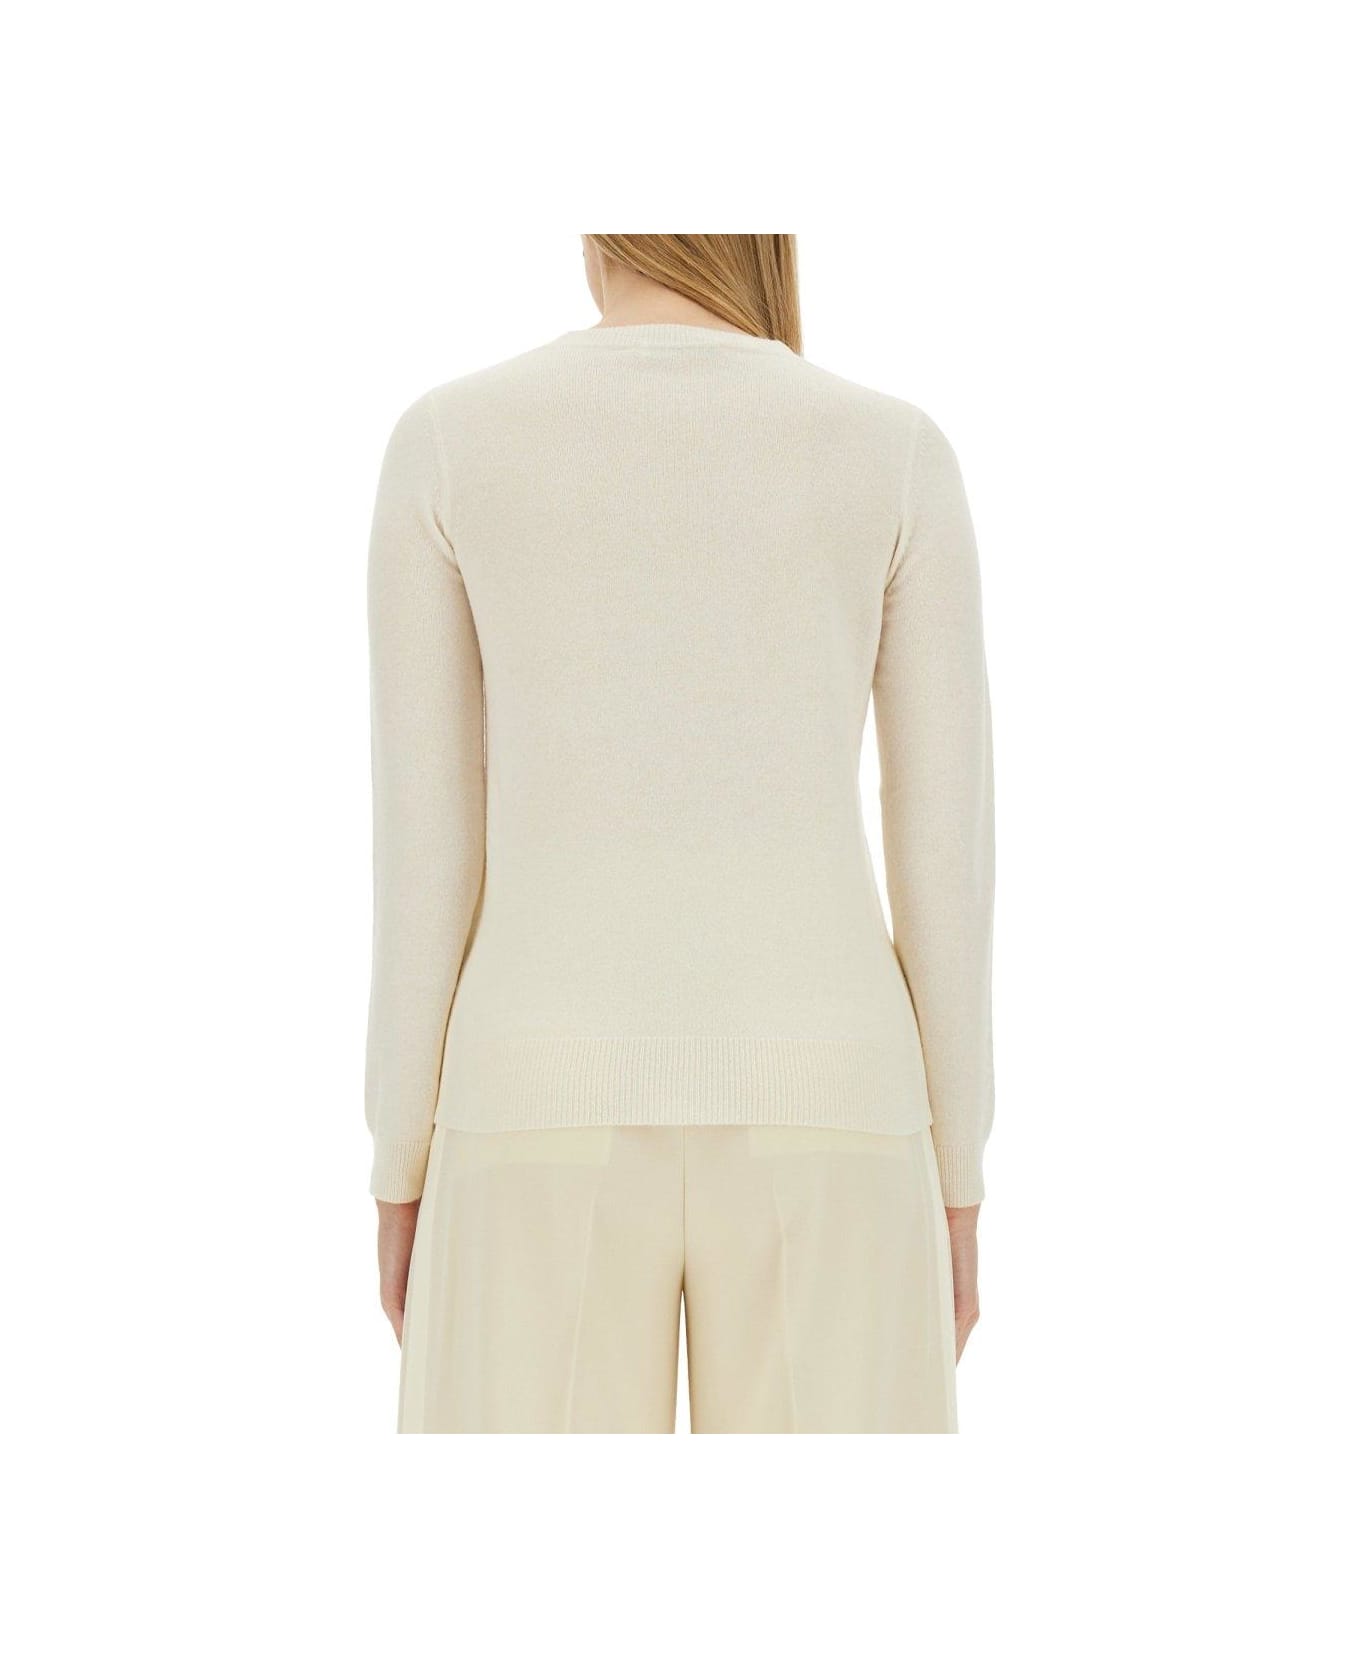 Max Mara Bari Wool And Cashmere Sweater - WHITE